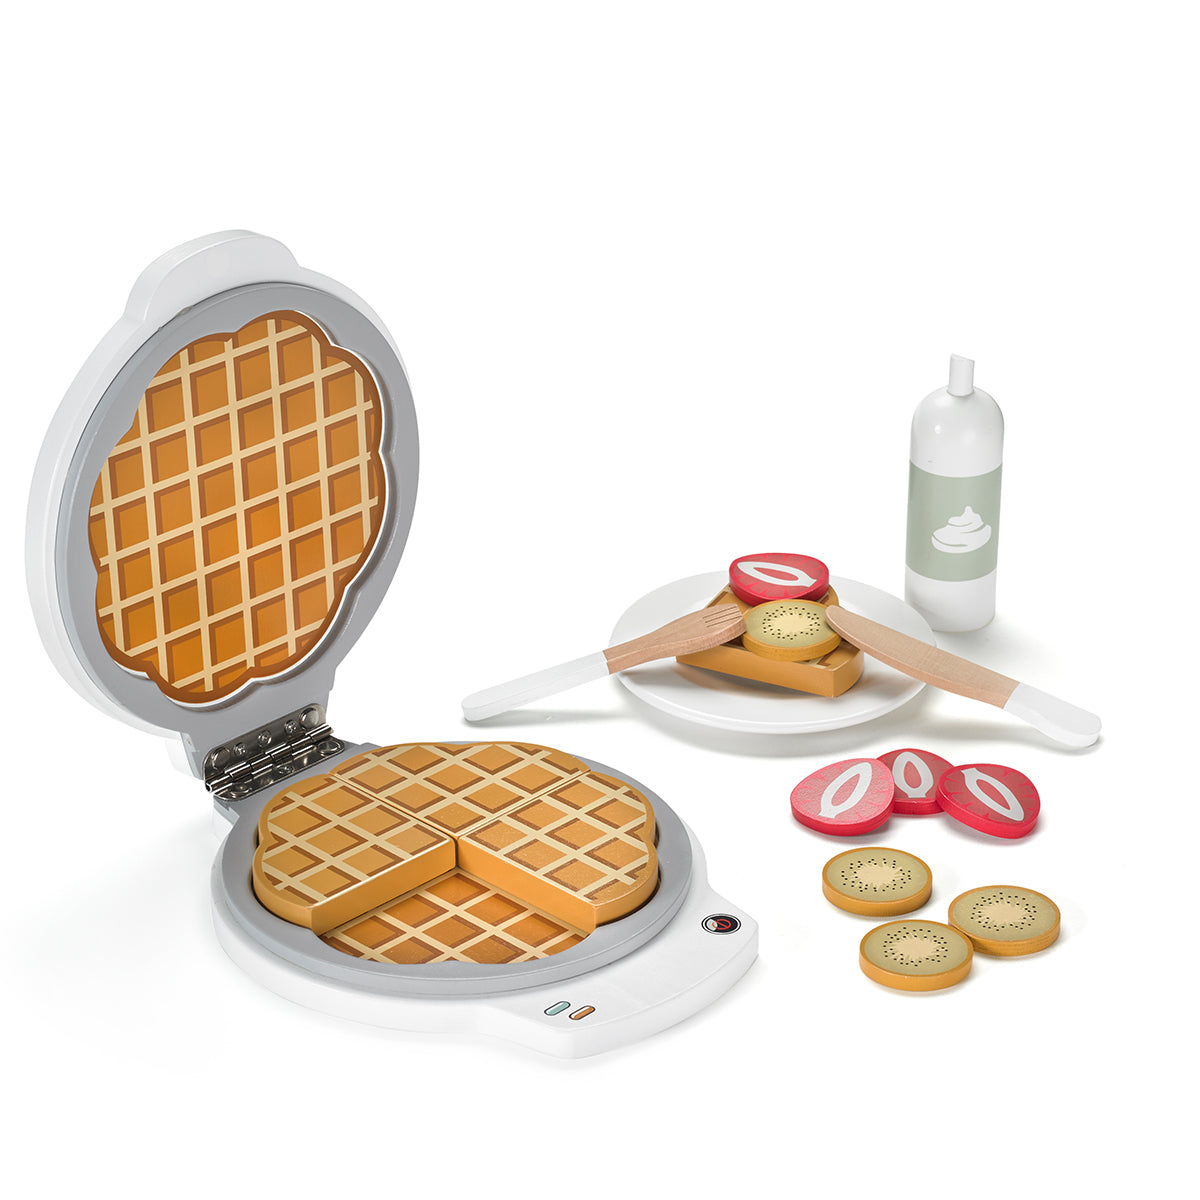 Met het Kid’s Concept wafelijzer kan jouw kindje heerlijke wafels maken! Het houten wafelijzer wordt geleverd met allemaal toppings zodat je de wafels nog lekkerder kunt maken. Vul de keukenspullen voor het speelkeukentje zo mooi aan! VanZus.